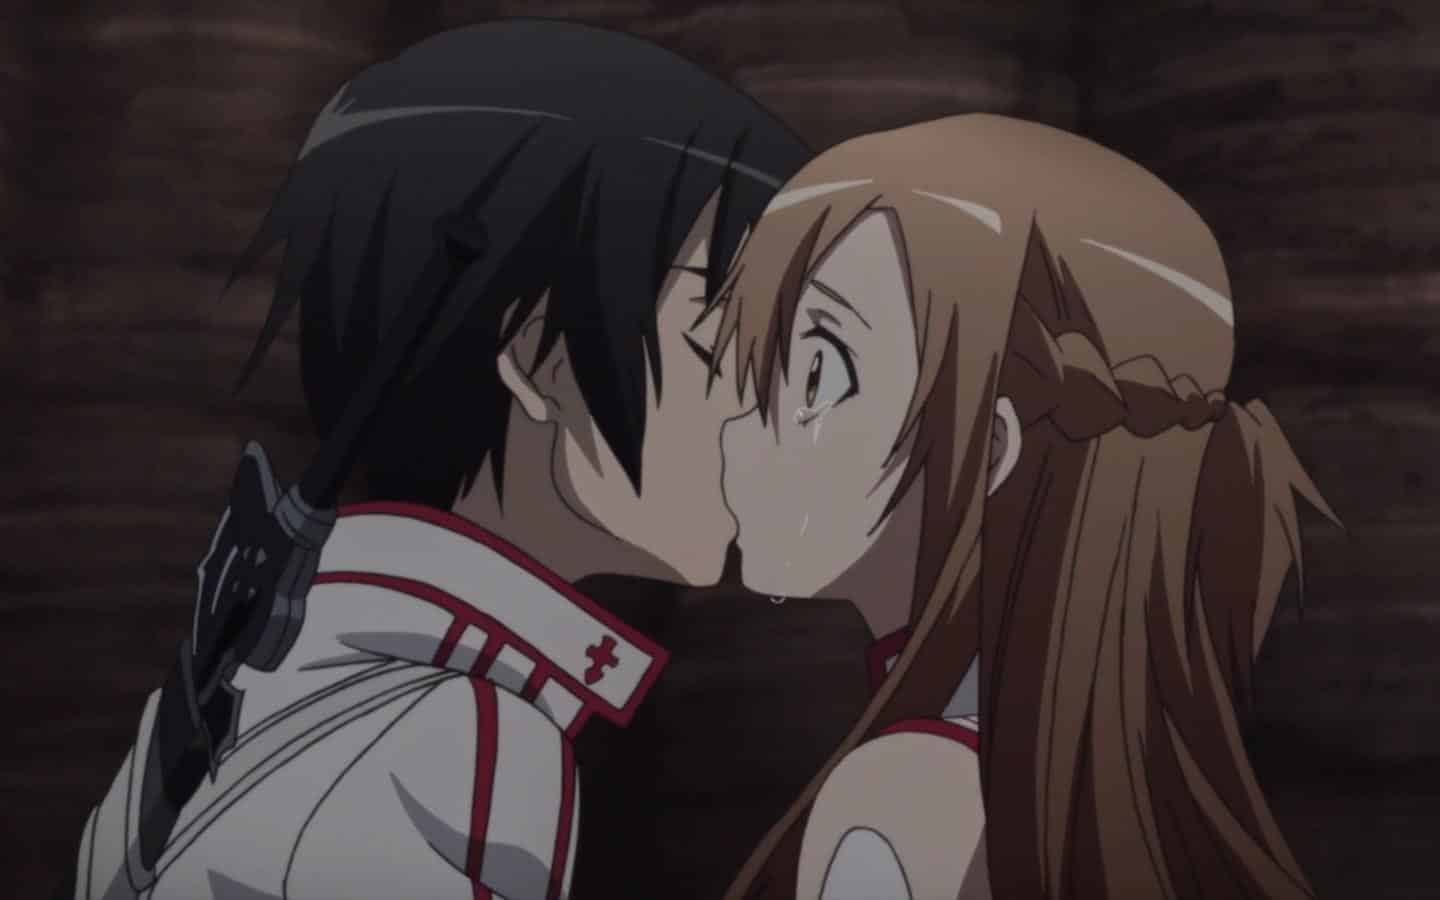 Xem thêm bộ hình Anime hôn nhau đẹp